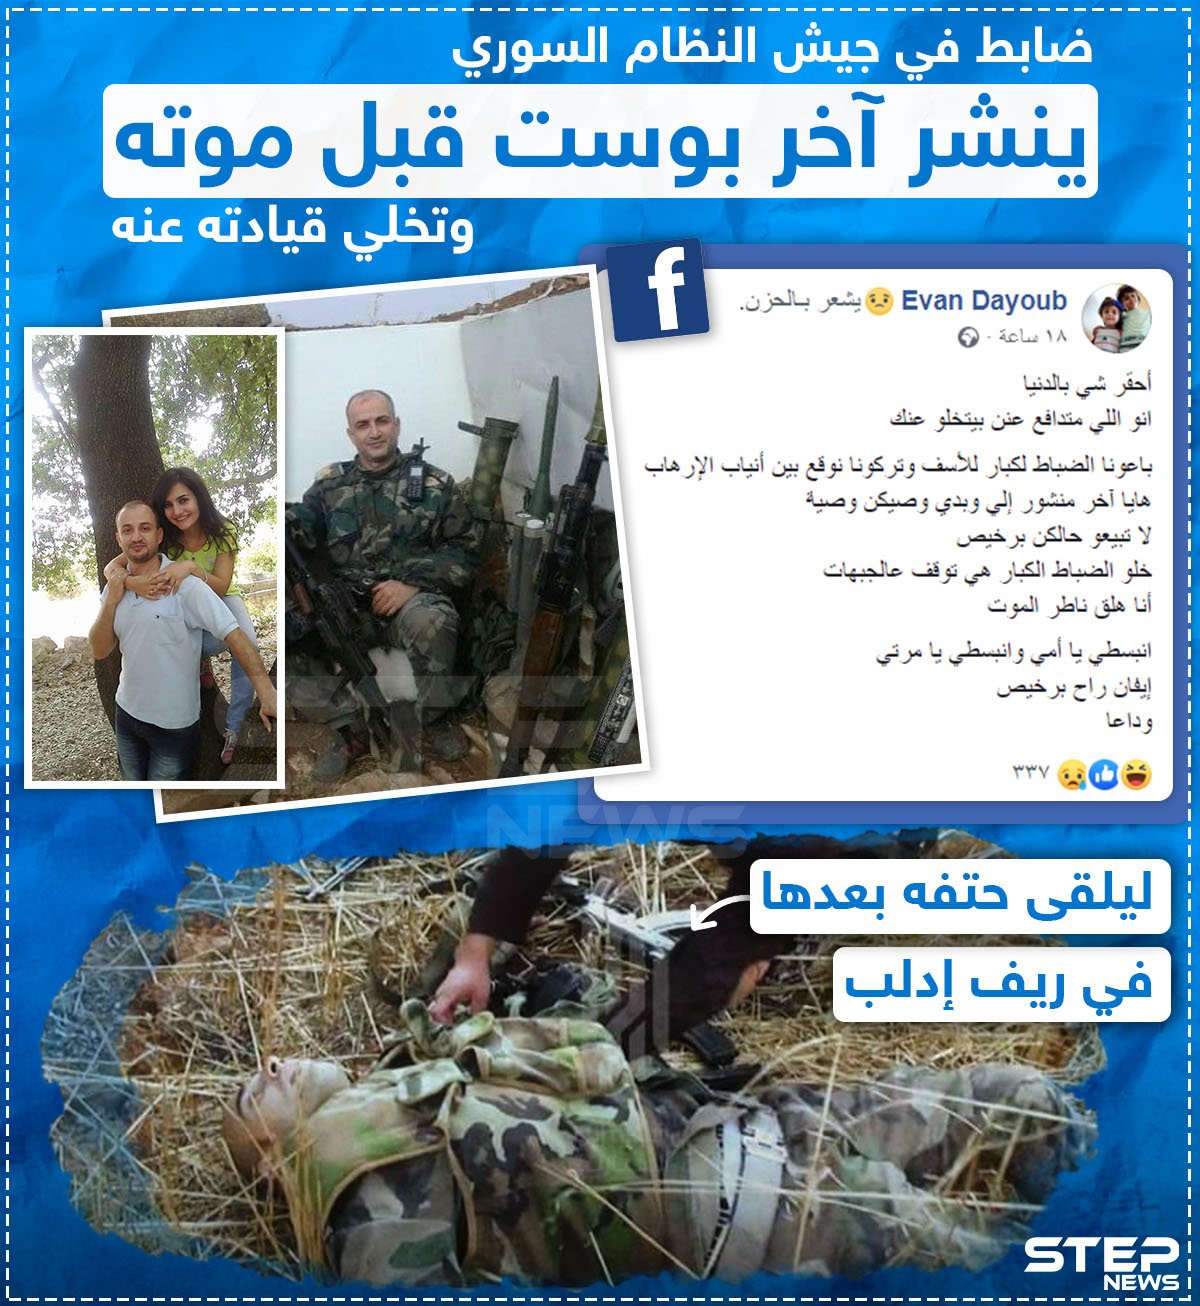 ضابط في جيش النظام السوري ينشر آخر بوست قبل موته و تخلي قيادته عنه  